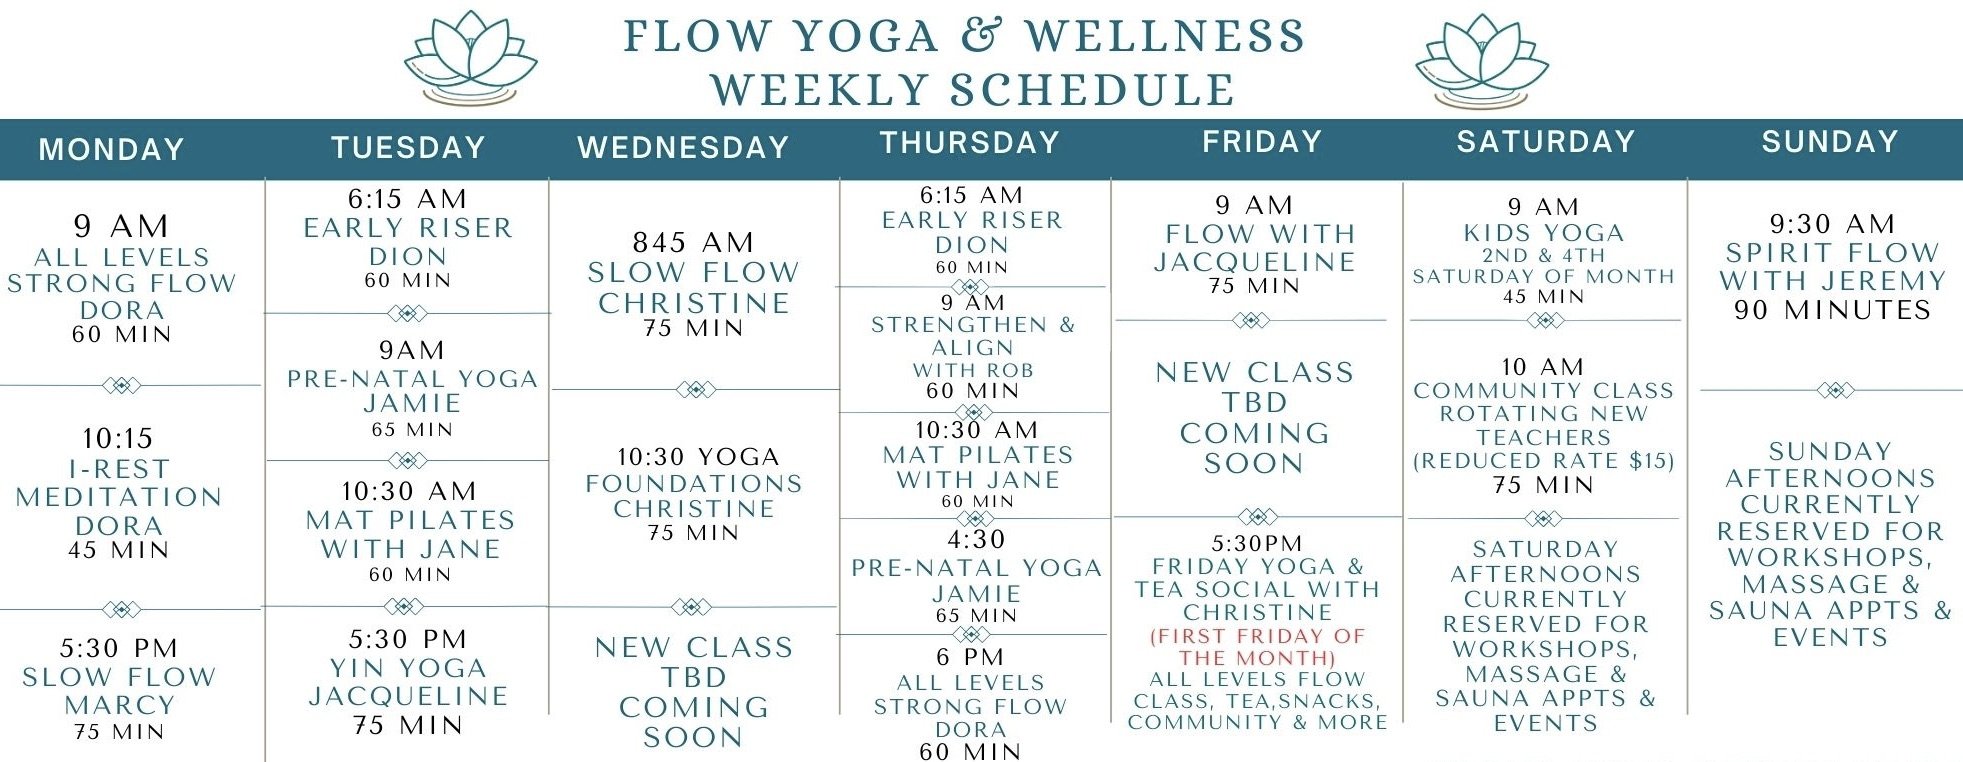 Yoga Classes in Santa Barbara/Goleta — Flow Yoga & Wellness Santa Barbara